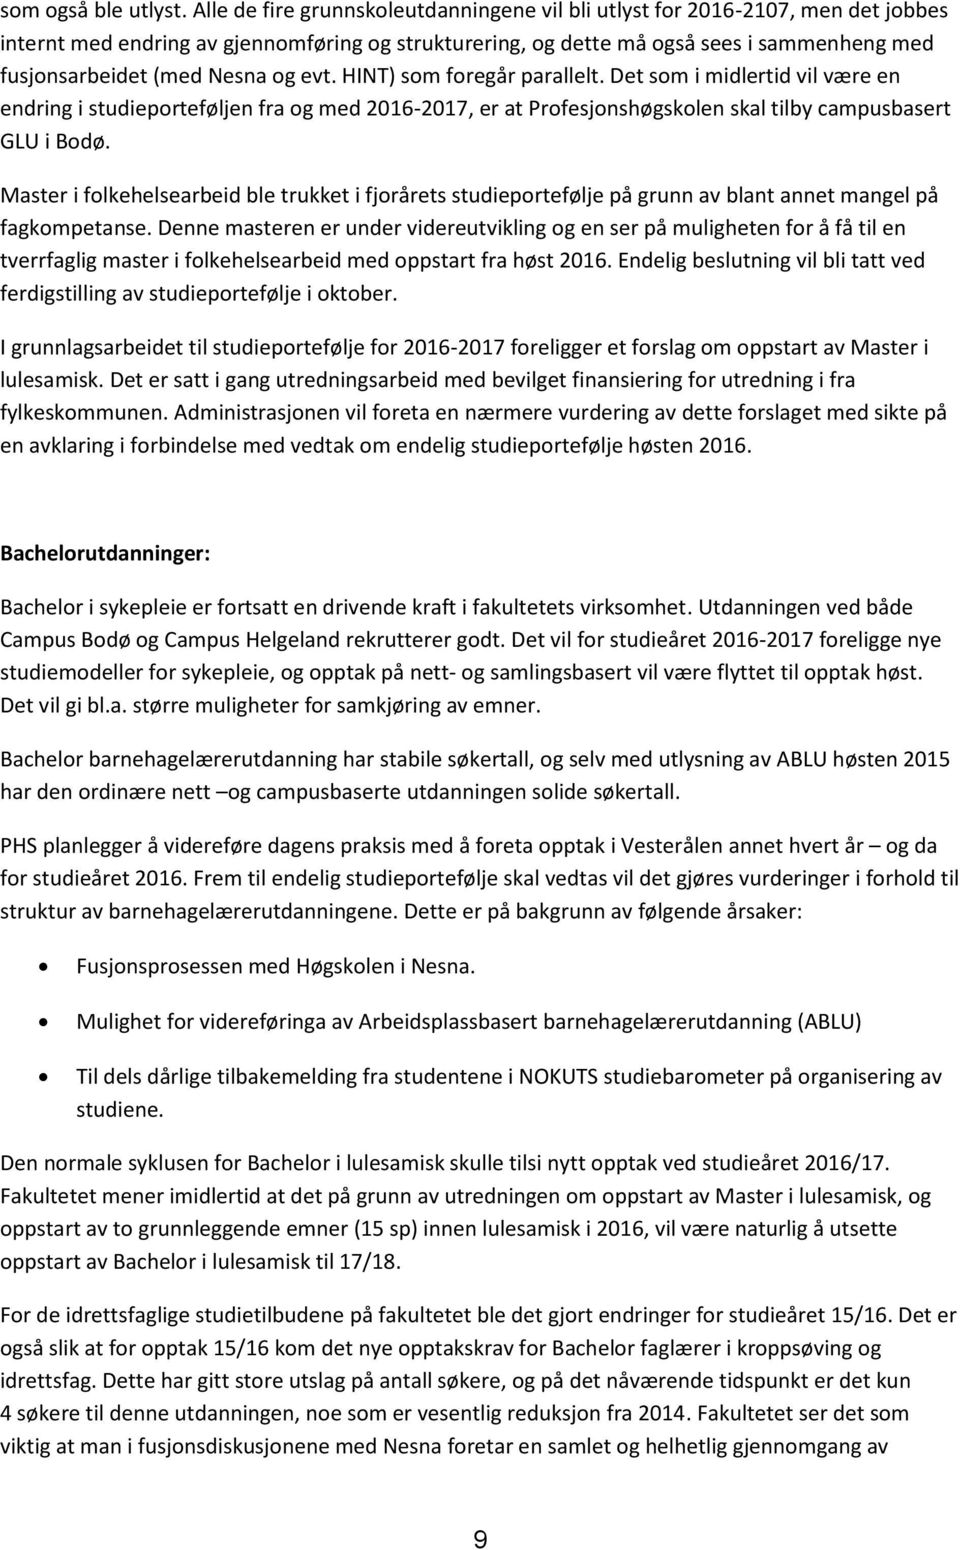 Nesna og evt. HINT) som foregår parallelt. Det som i midlertid vil være en endring i studieporteføljen fra og med 2016-2017, er at Profesjonshøgskolen skal tilby campusbasert GLU i Bodø.